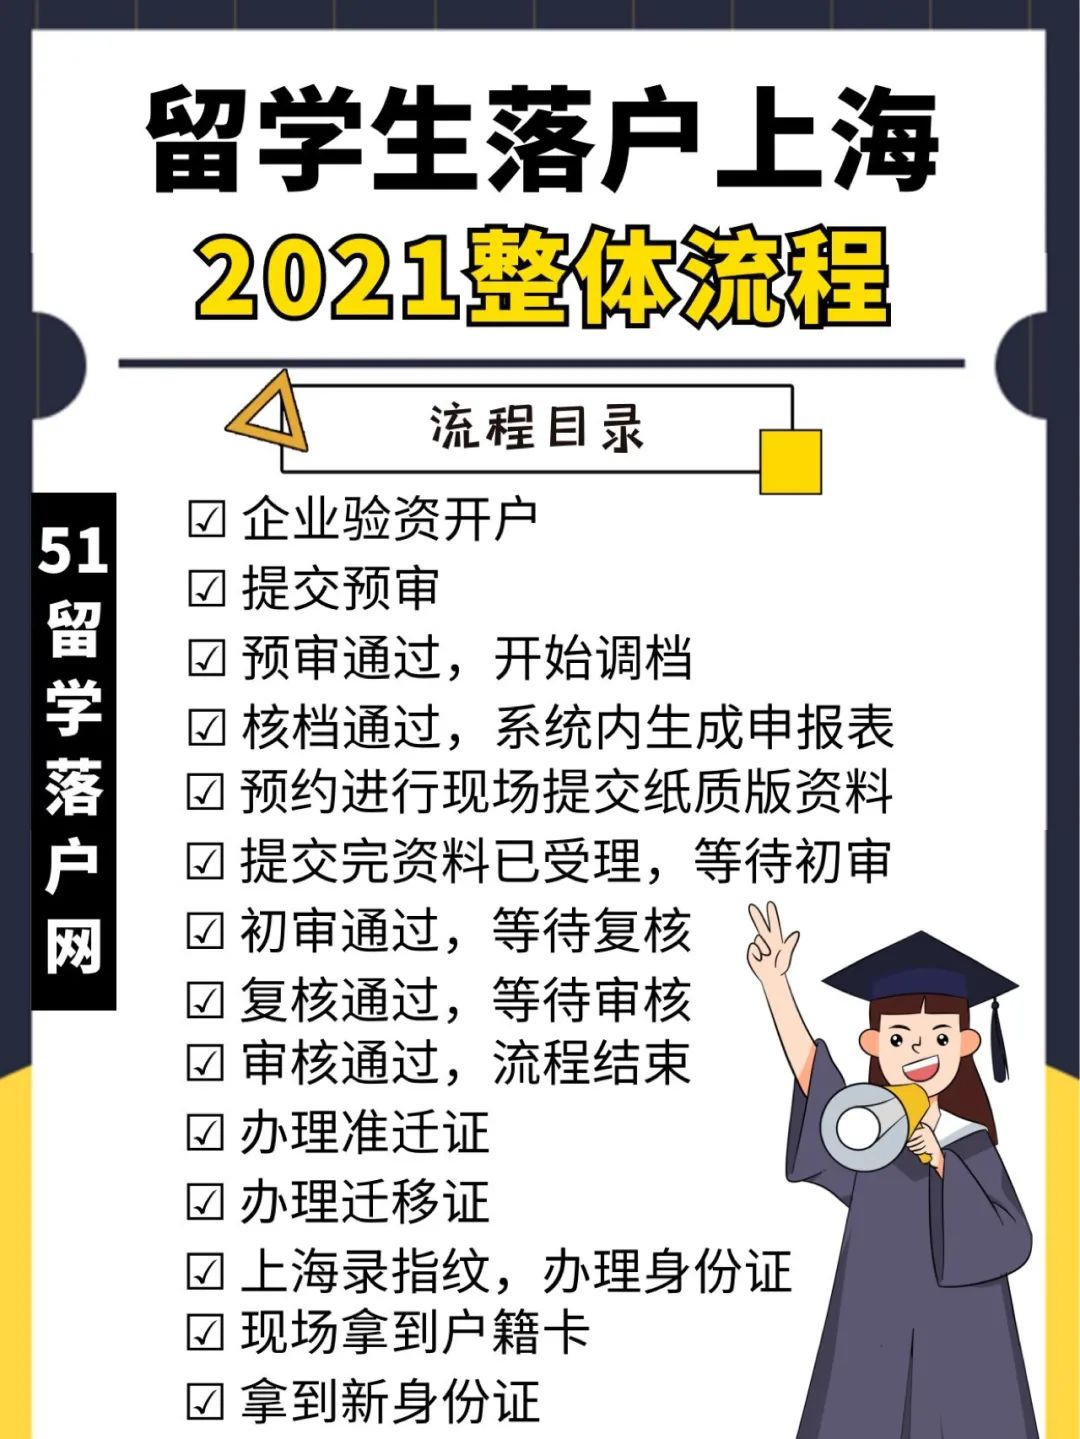 1分钟带你了解2021留学生落户上海整体流程